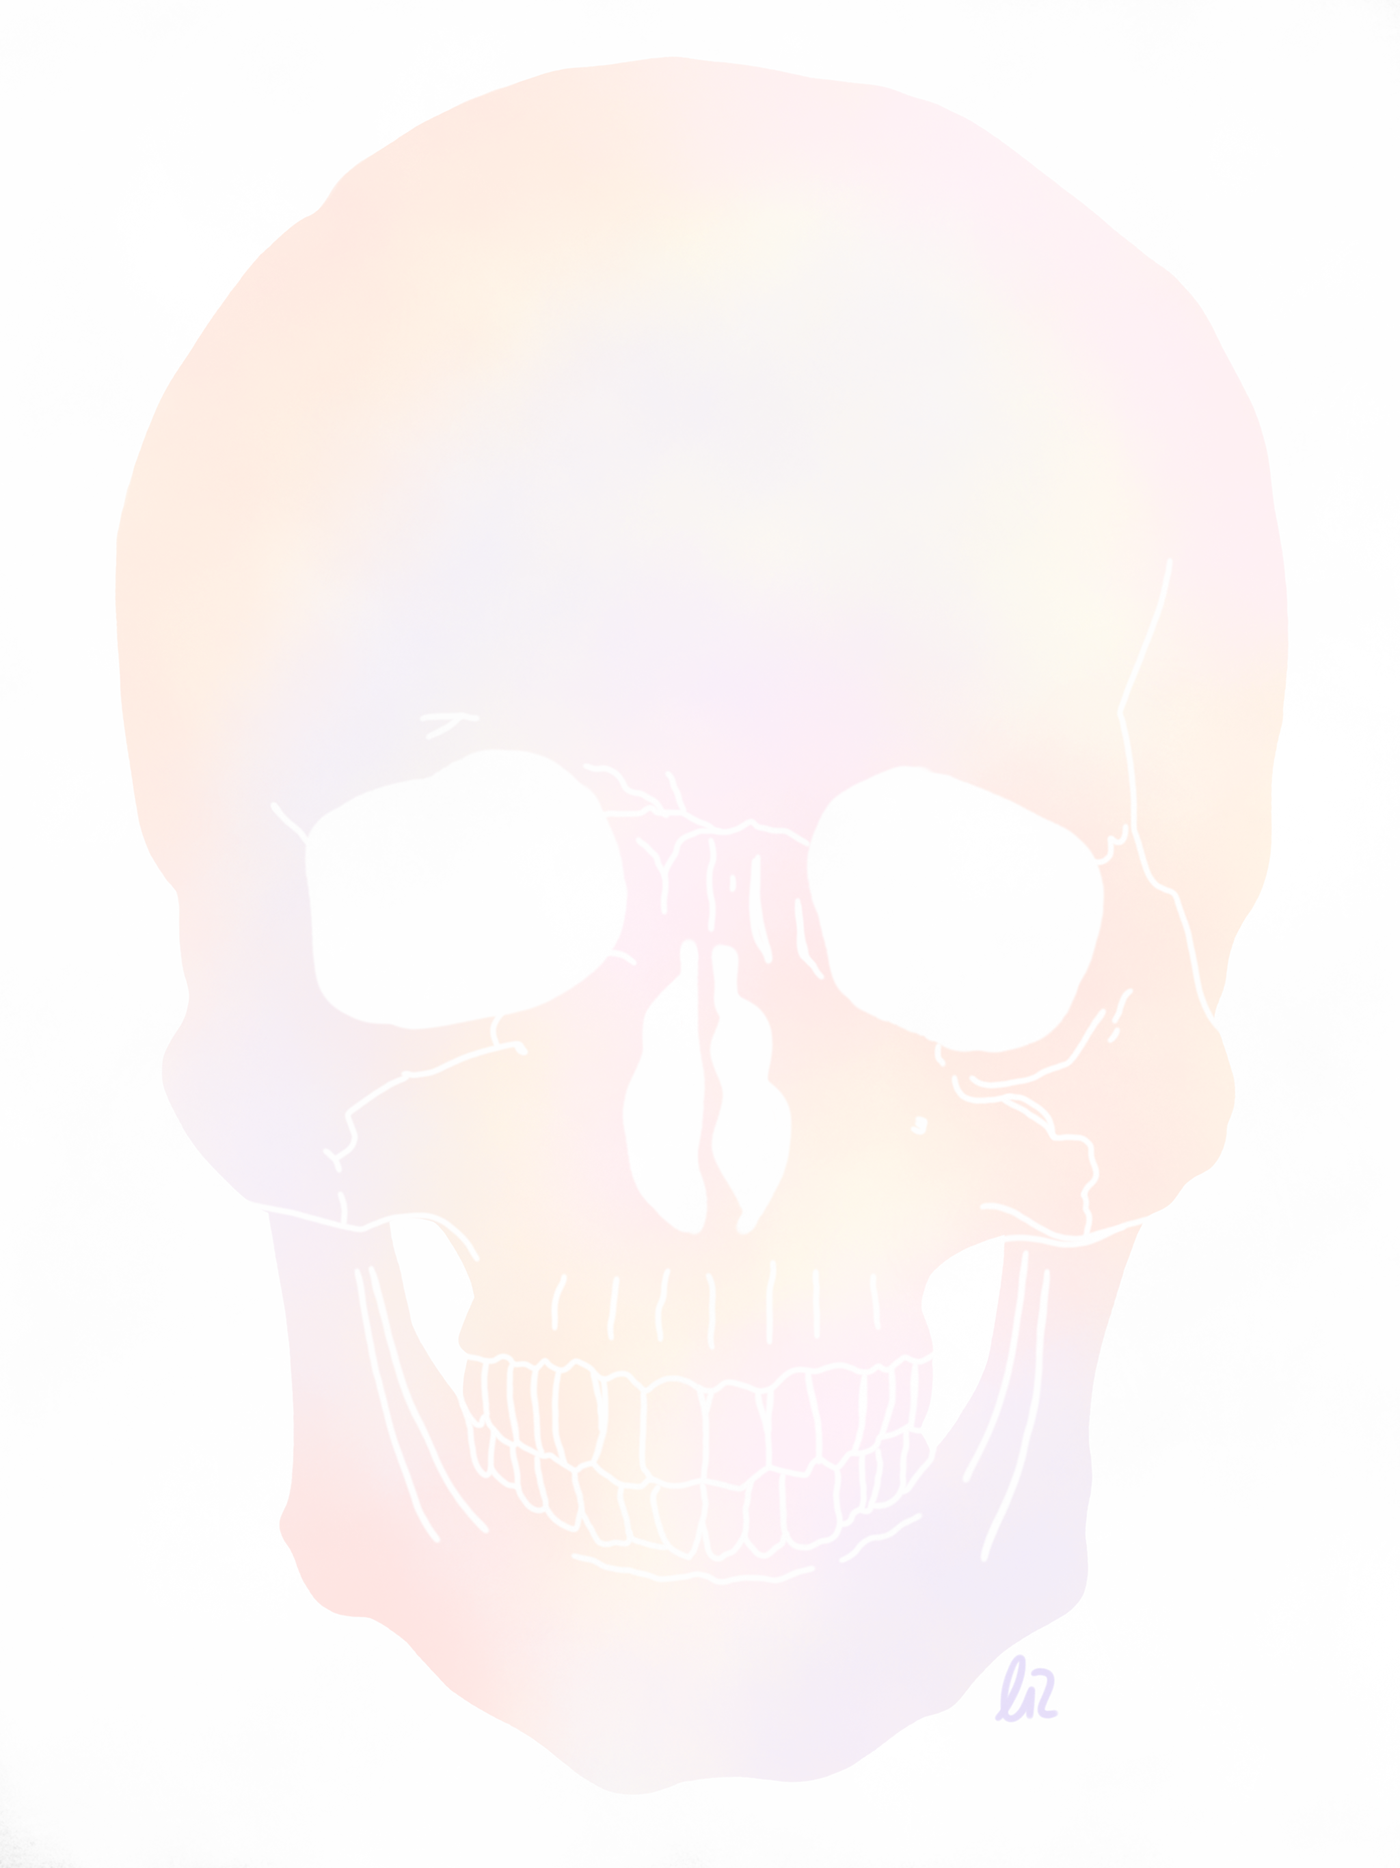 holographic digital art painting   ILLUSTRATION  Drawing  malen Zeichnung zeichnen skull totenkopf